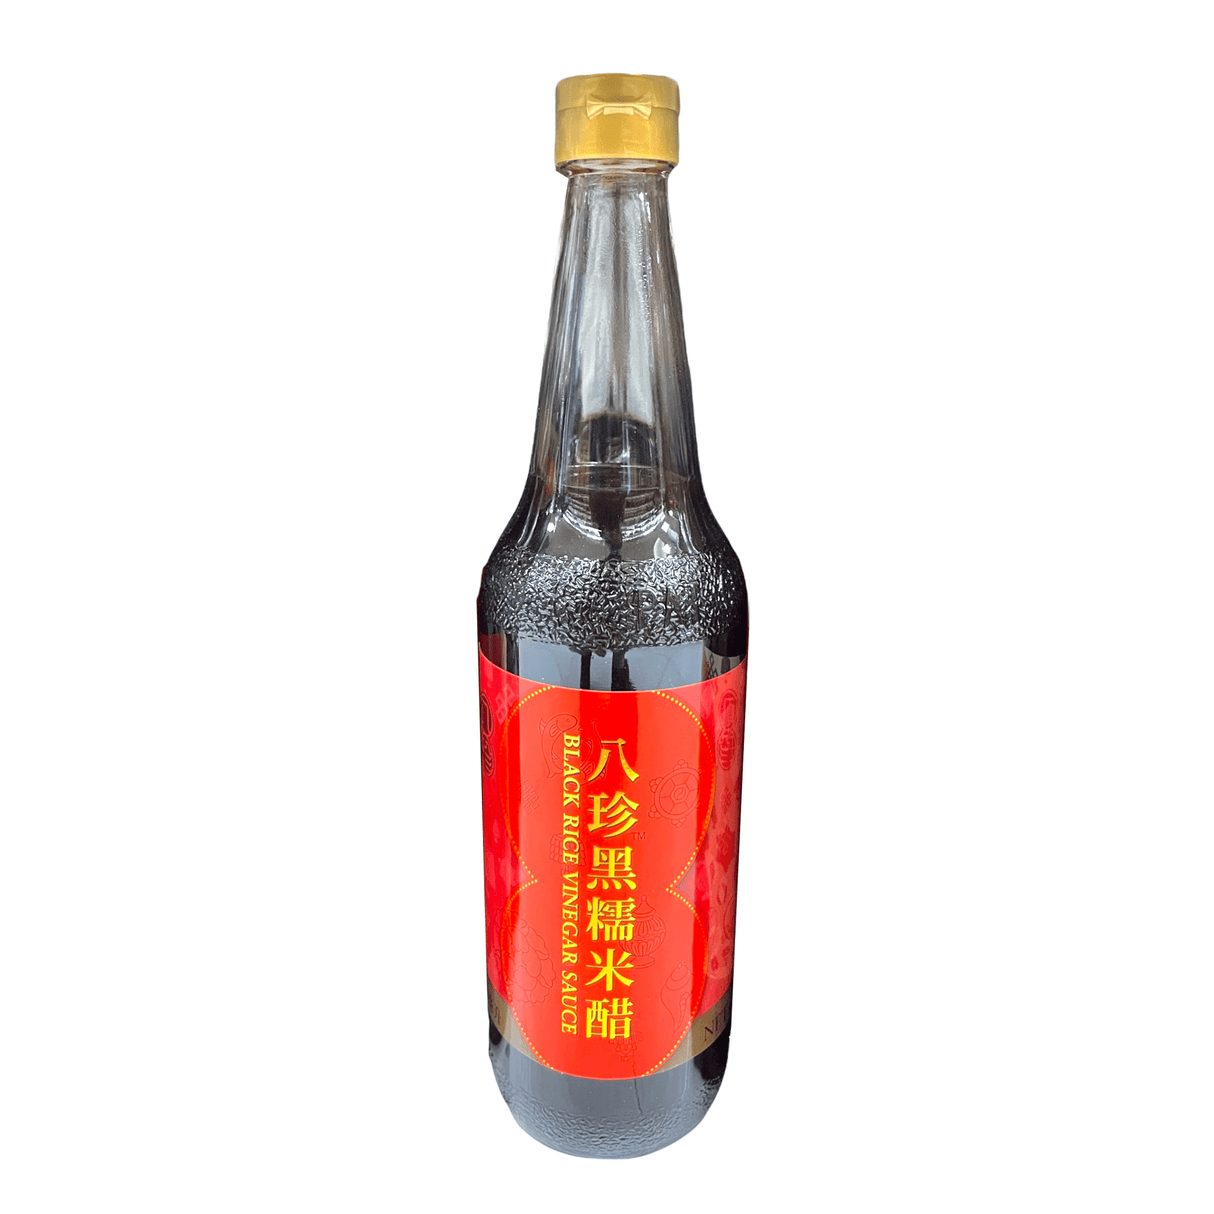 Patchun Black Rice Vinegar Sauce